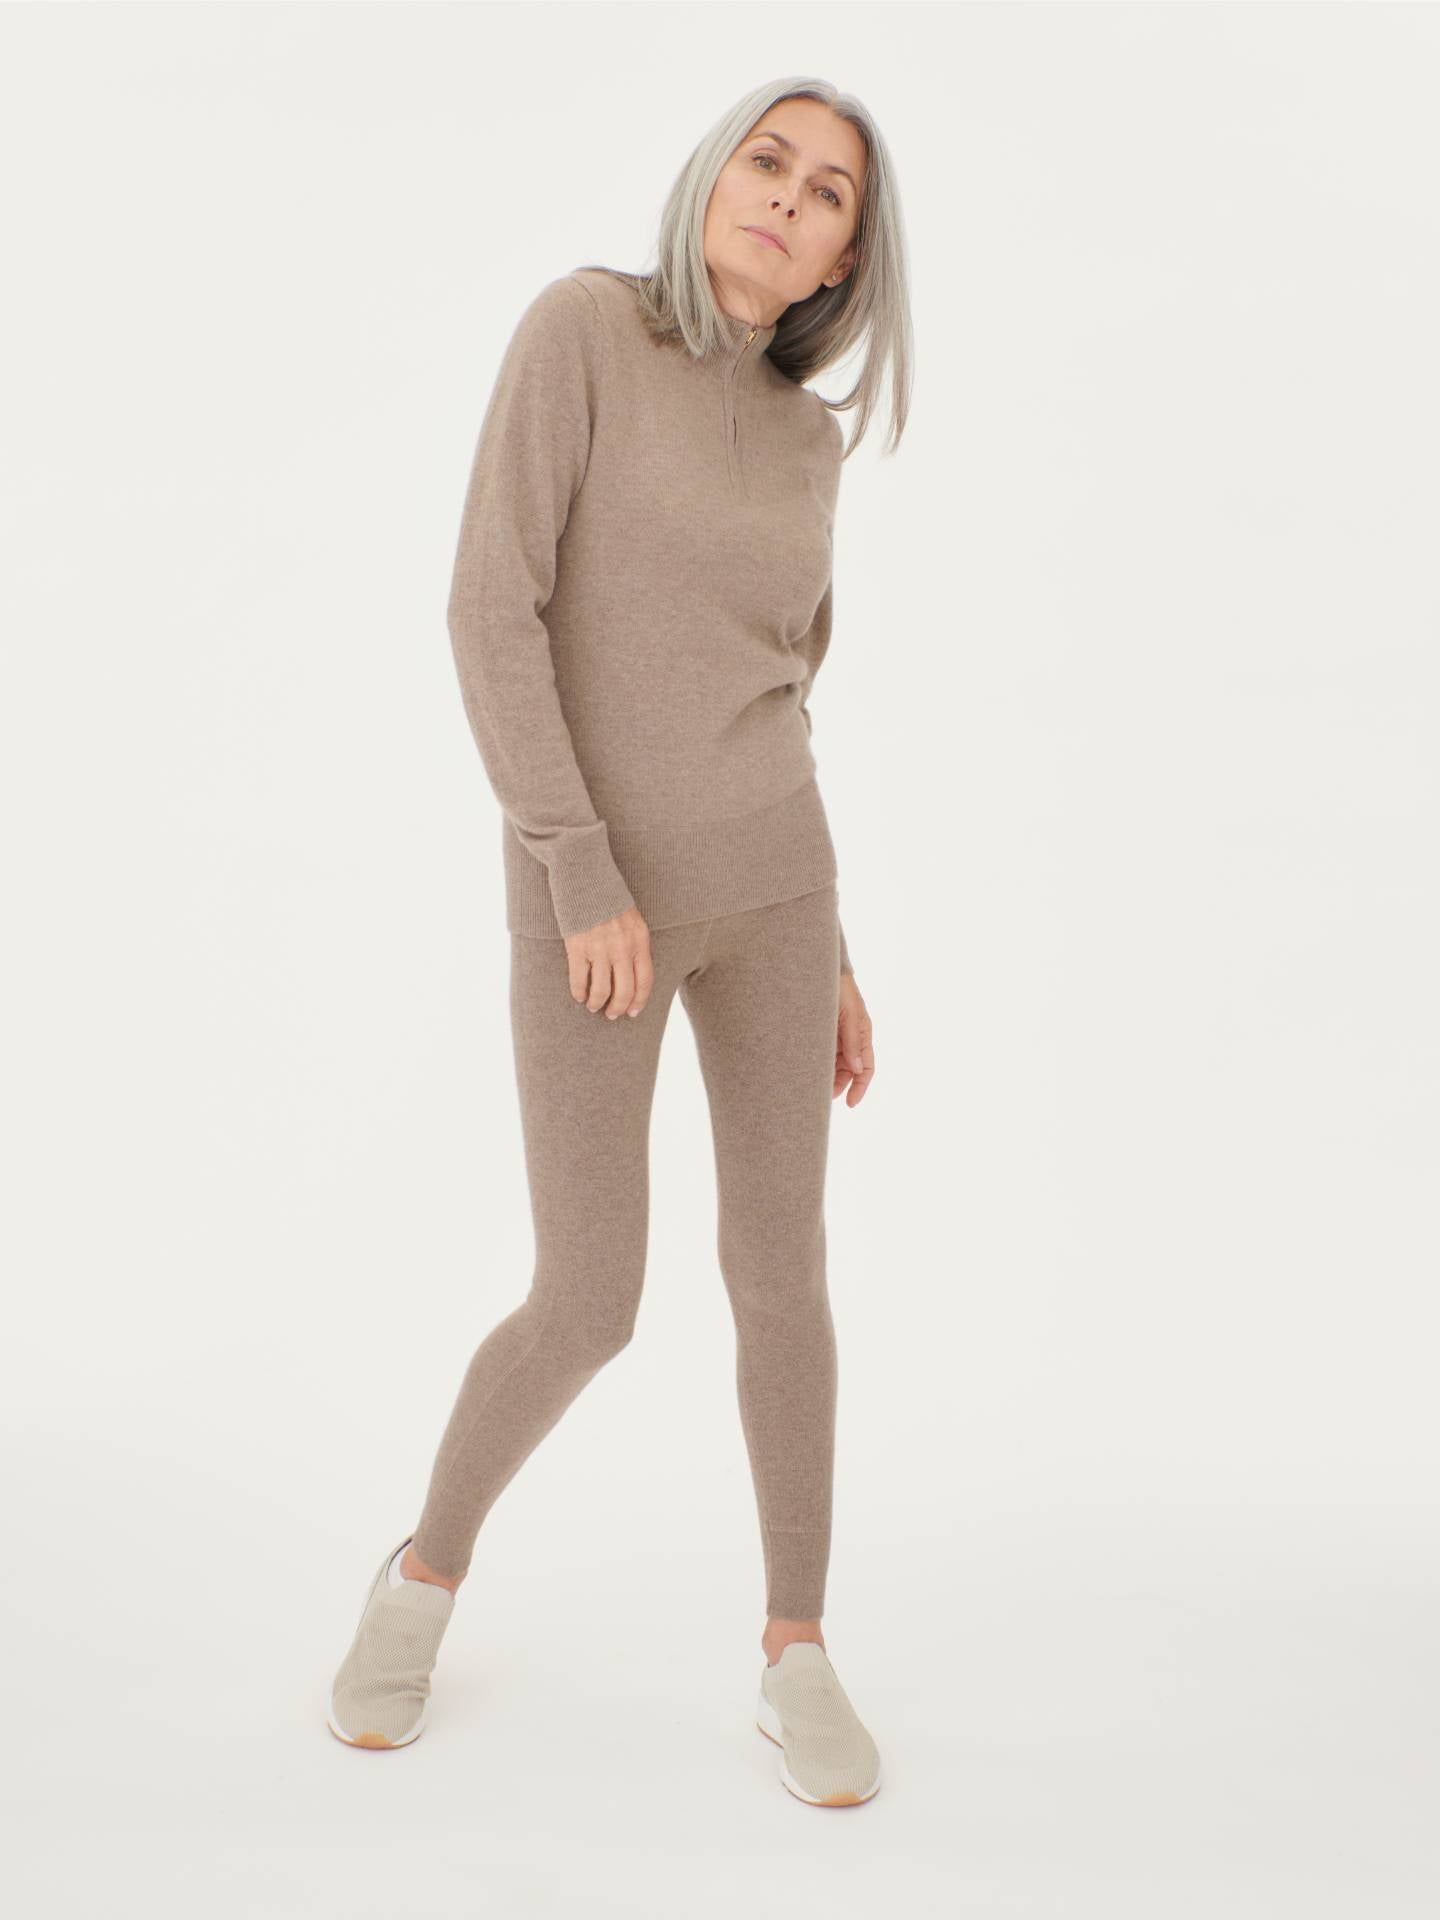 Damen Kaschmir Hochgeschlossener Pullover Mit Reißverschluss Taupe - Gobi Cashmere